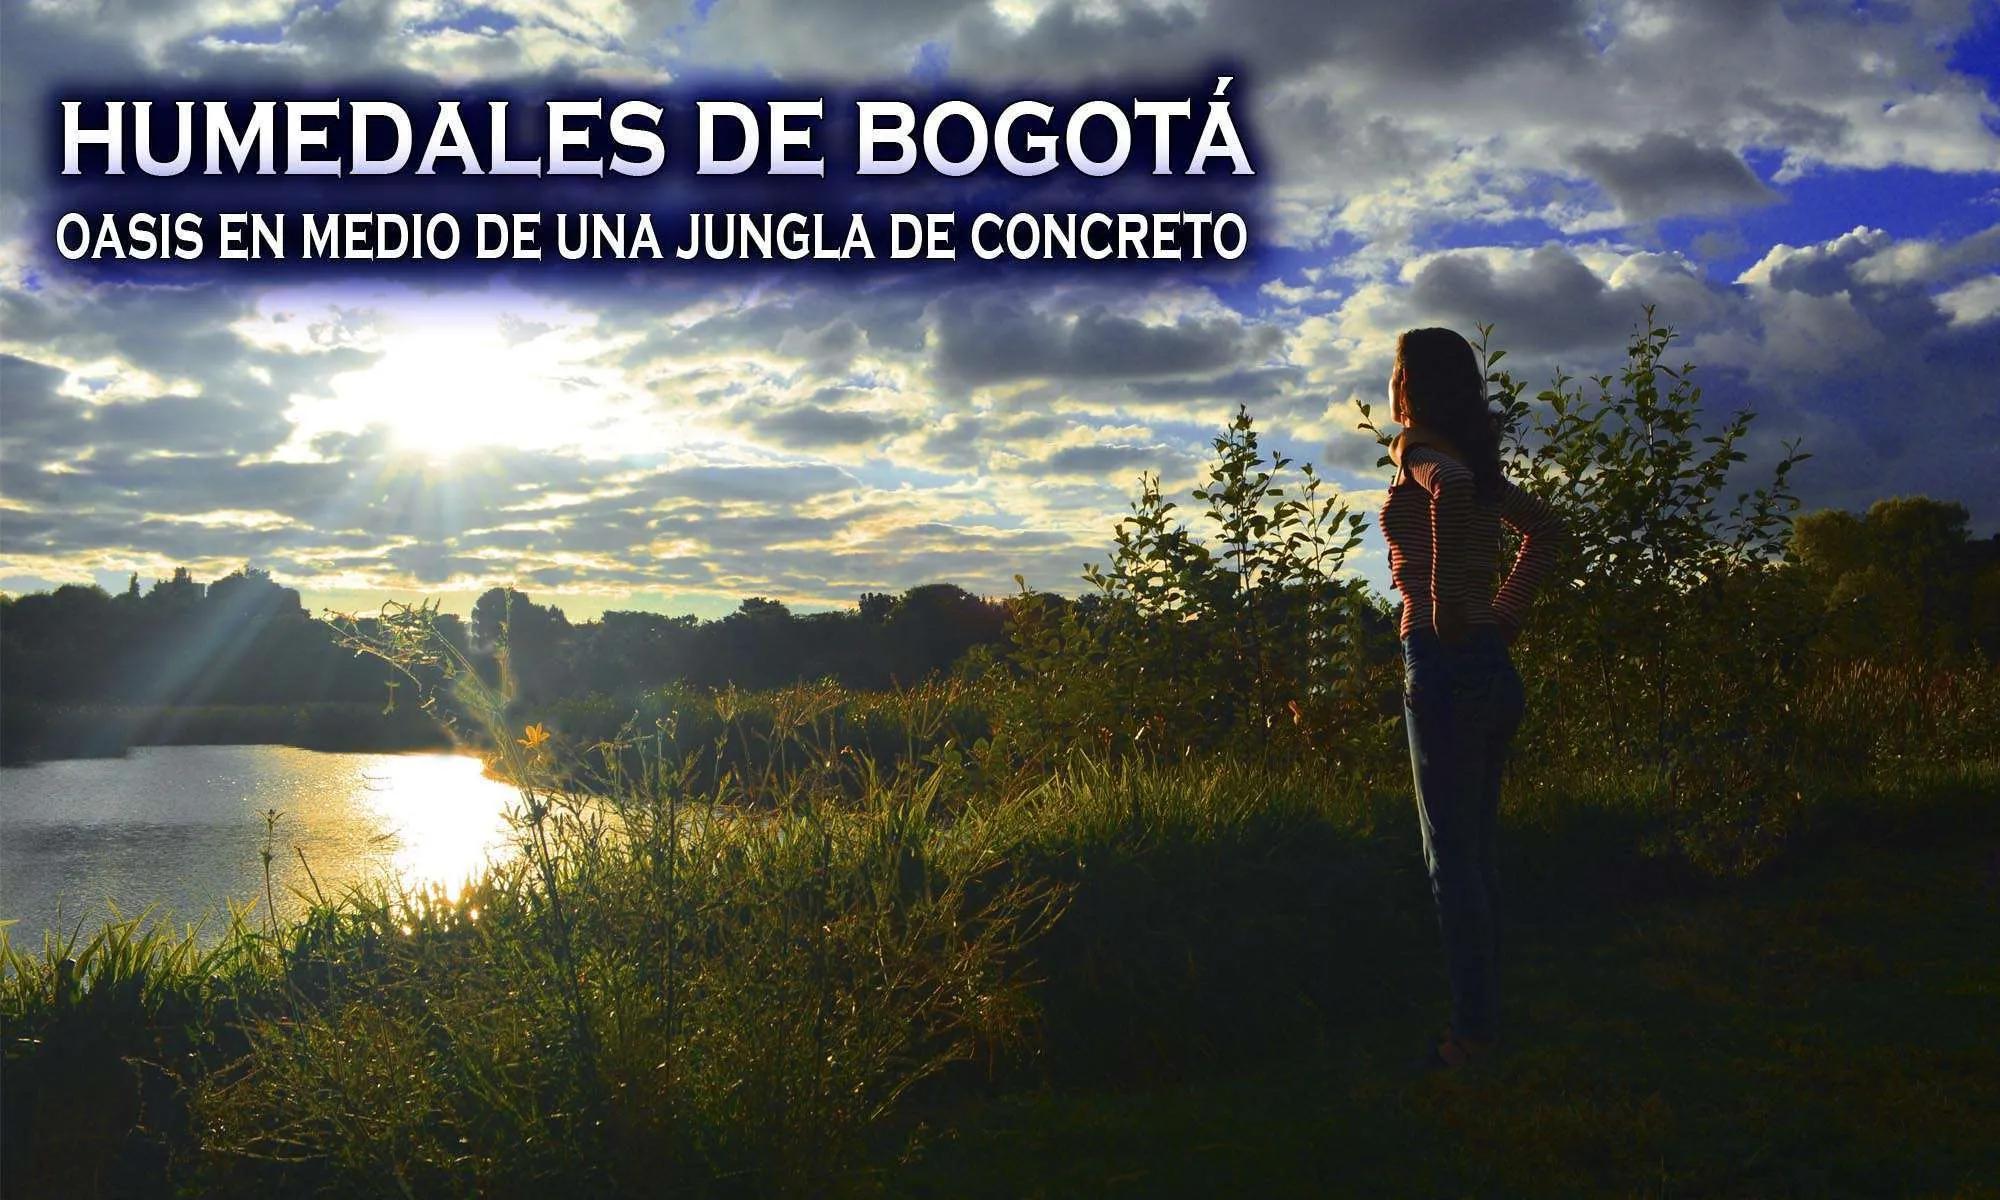 flora y fauna de bogota colombia - Qué tipo de fauna se encuentra en los humedales de Bogotá